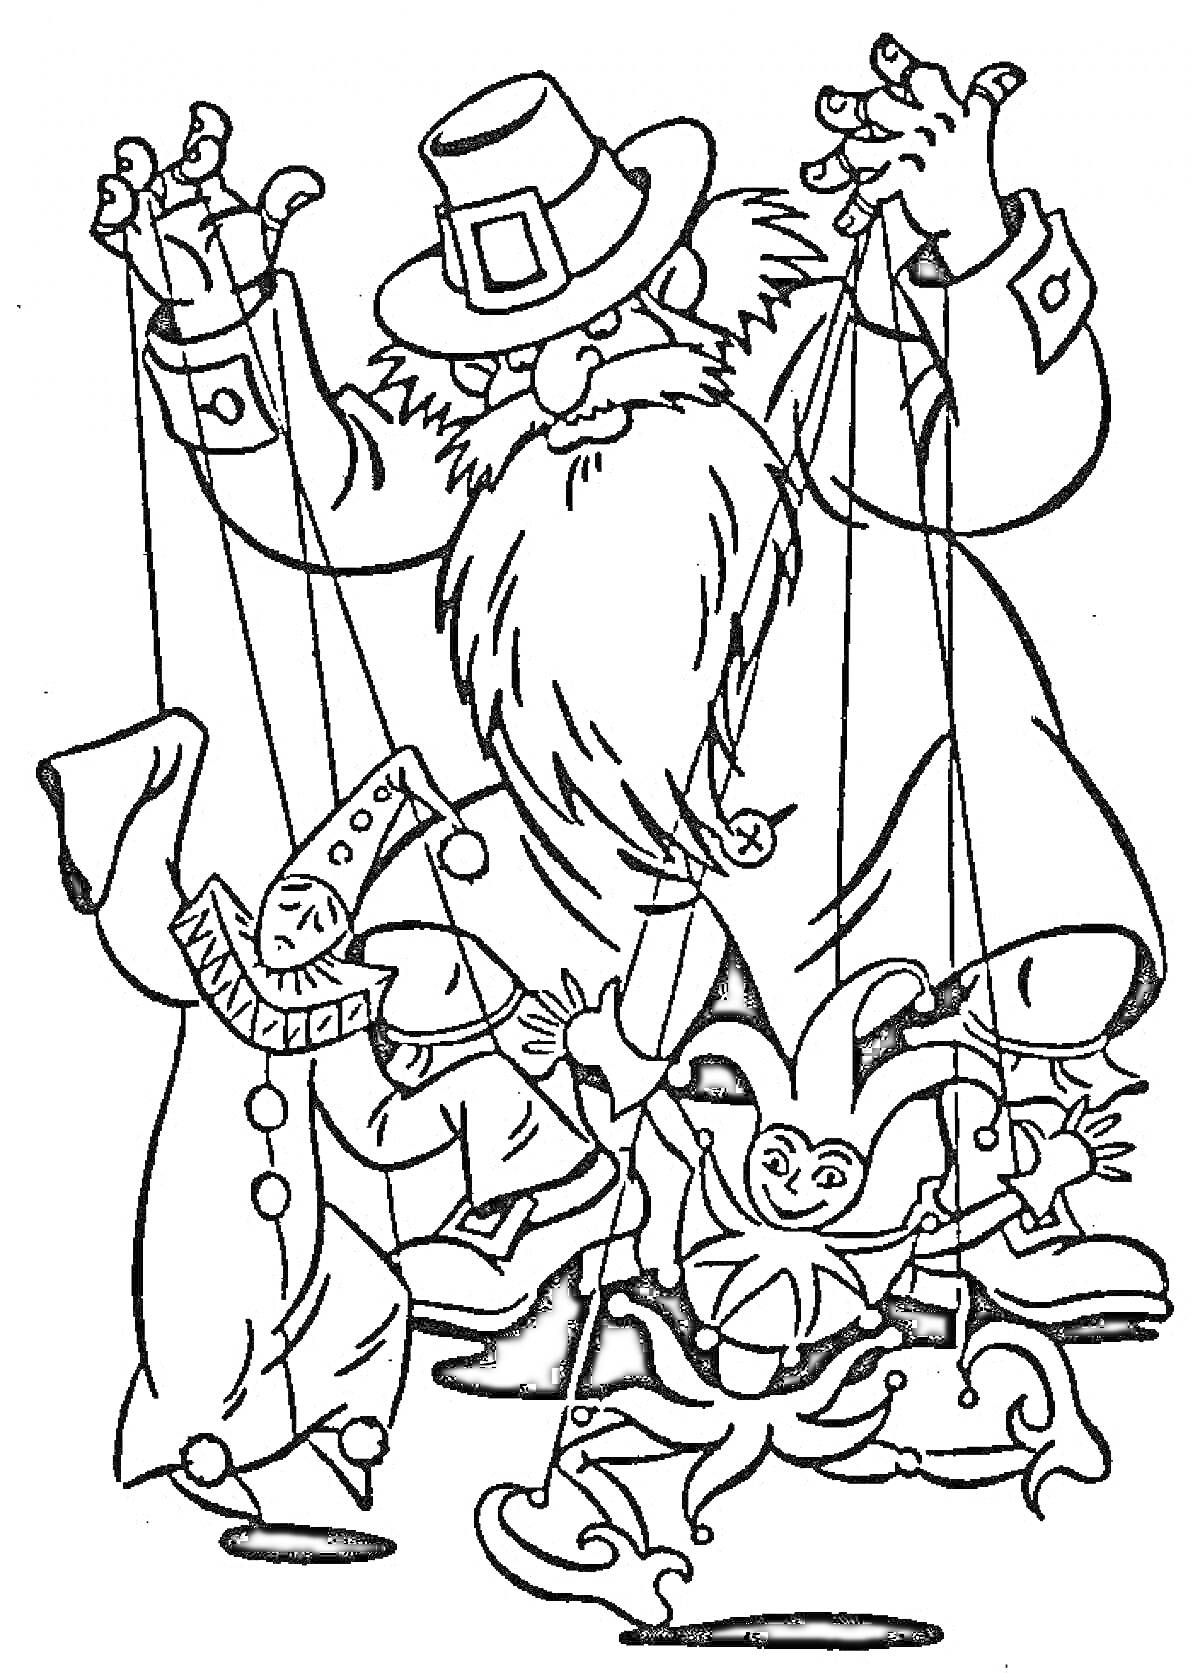 Раскраска Человек с бородой и шляпой управляет двумя марионетками — клоуном и шутом